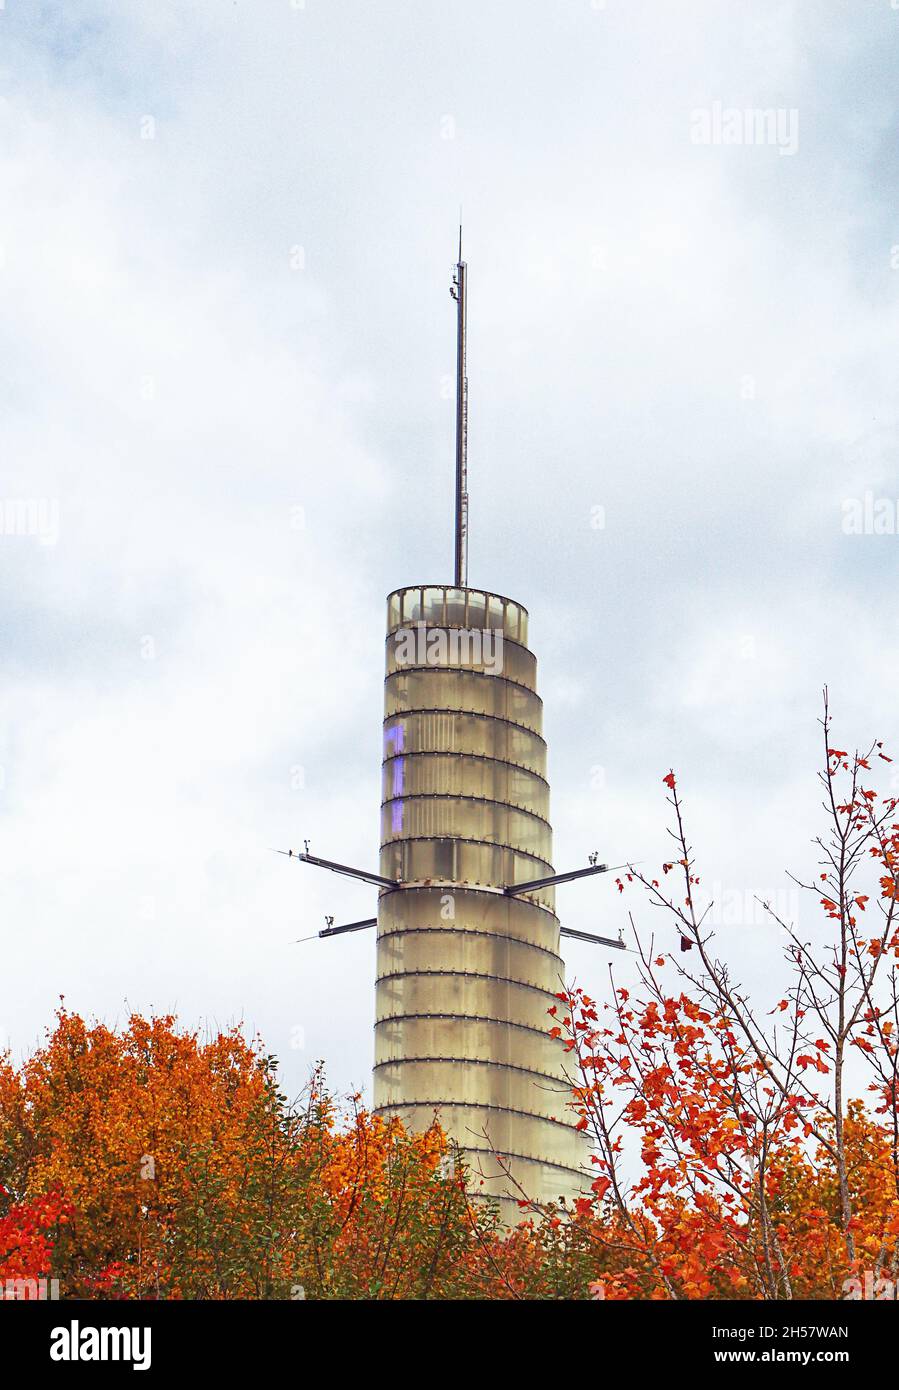 Campus de investigación Garching - Universidad Técnica de Munich, Alemania, Oskar-von-Miller torre meteorológica para recoger mediciones climatológicas Foto de stock